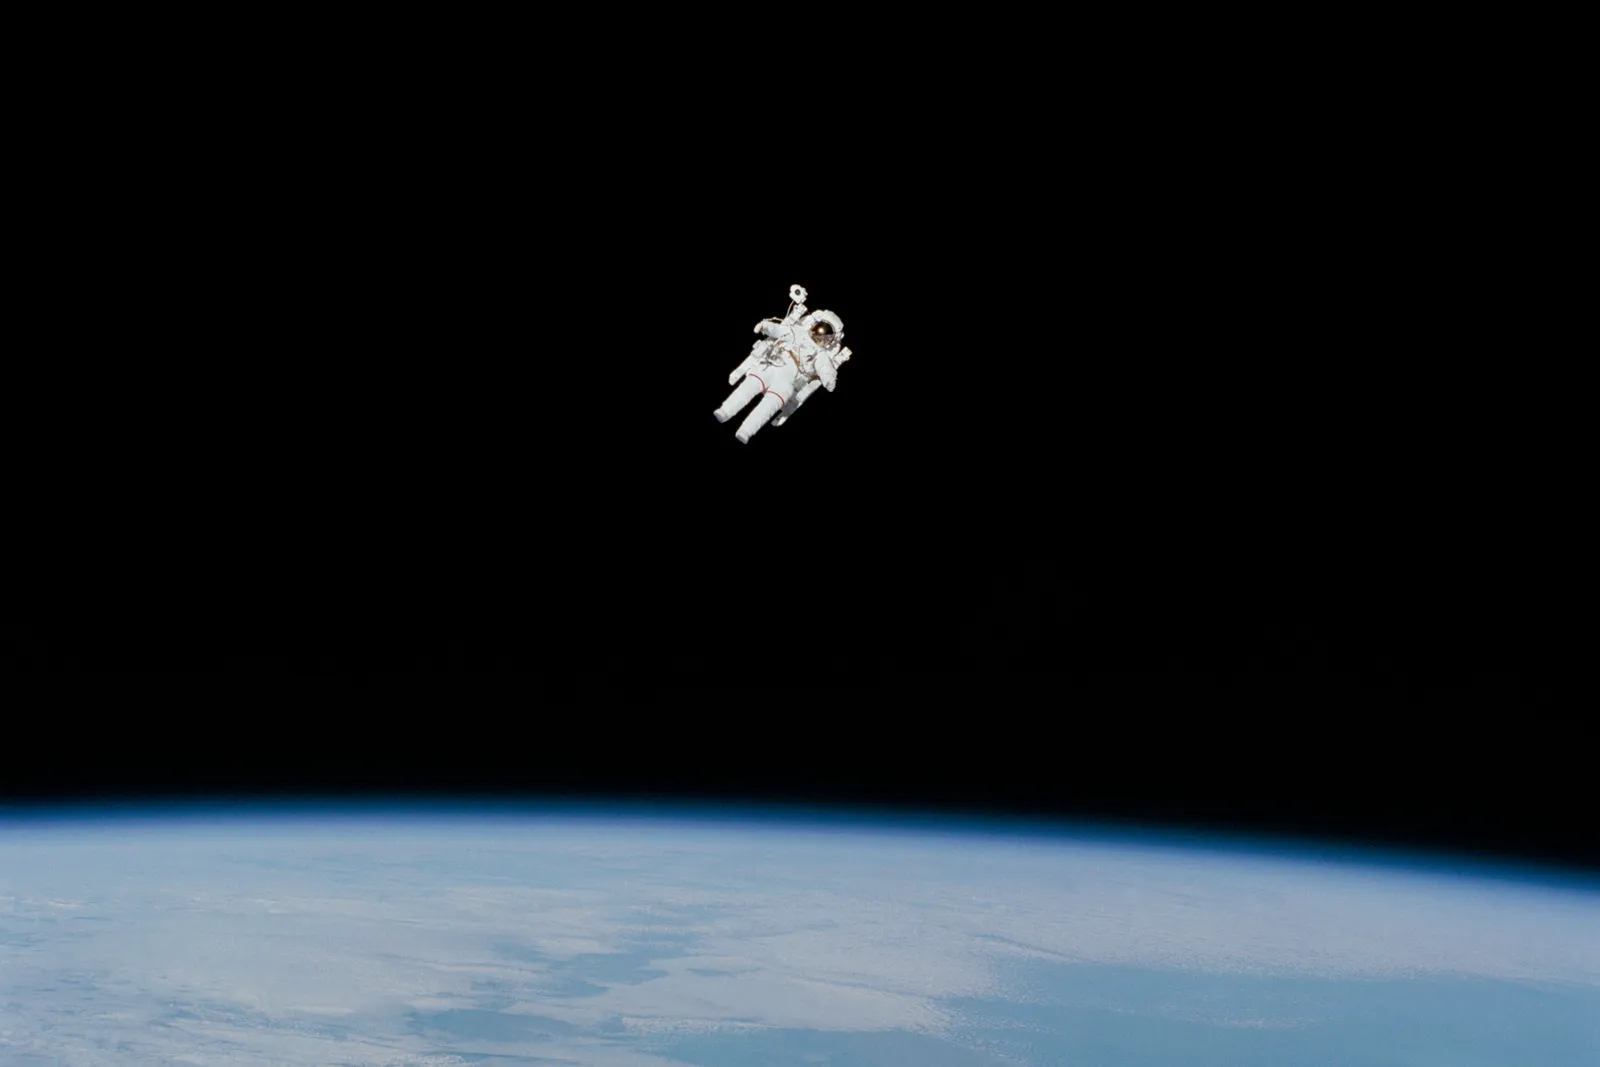 Η ιστορία πίσω από την «πιο τρομακτική φωτογραφία» που τραβήχτηκε στο διάστημα (βίντεο)